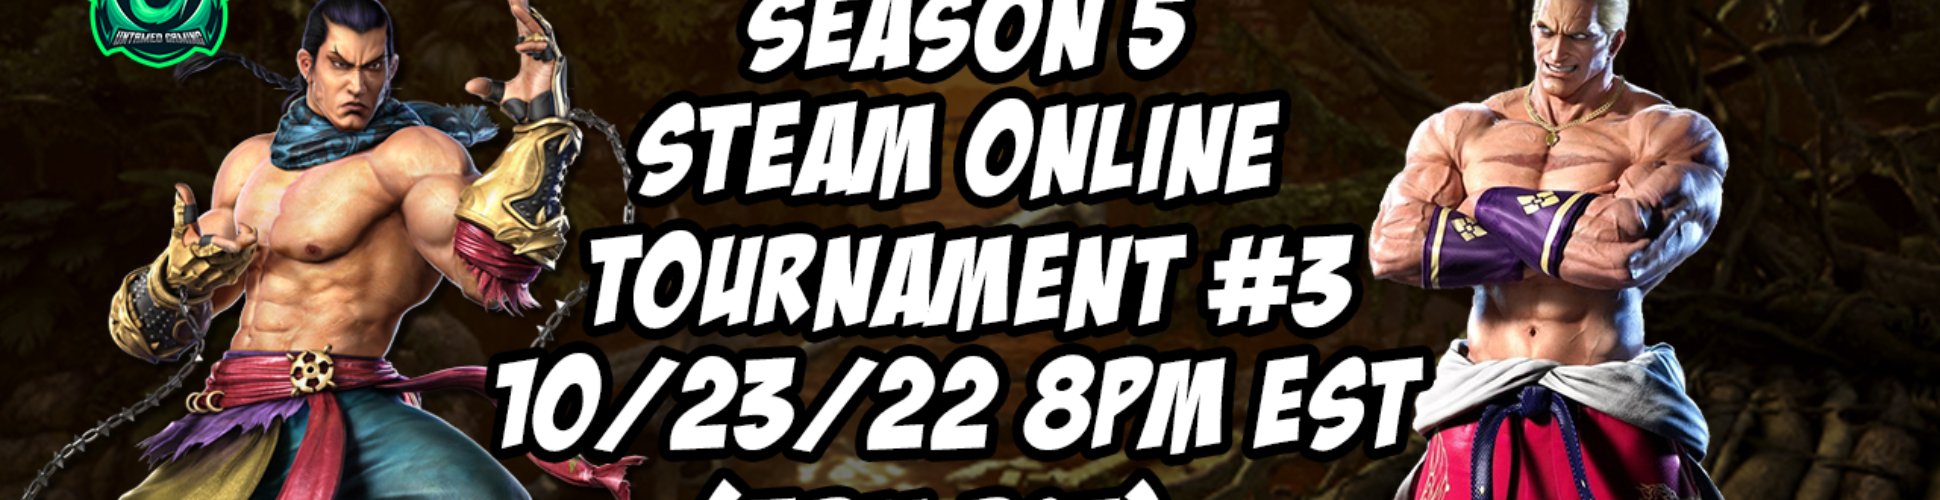 Tekken 7 Season 5 Steam Online Tournament #3 10/23/22 8pm EST